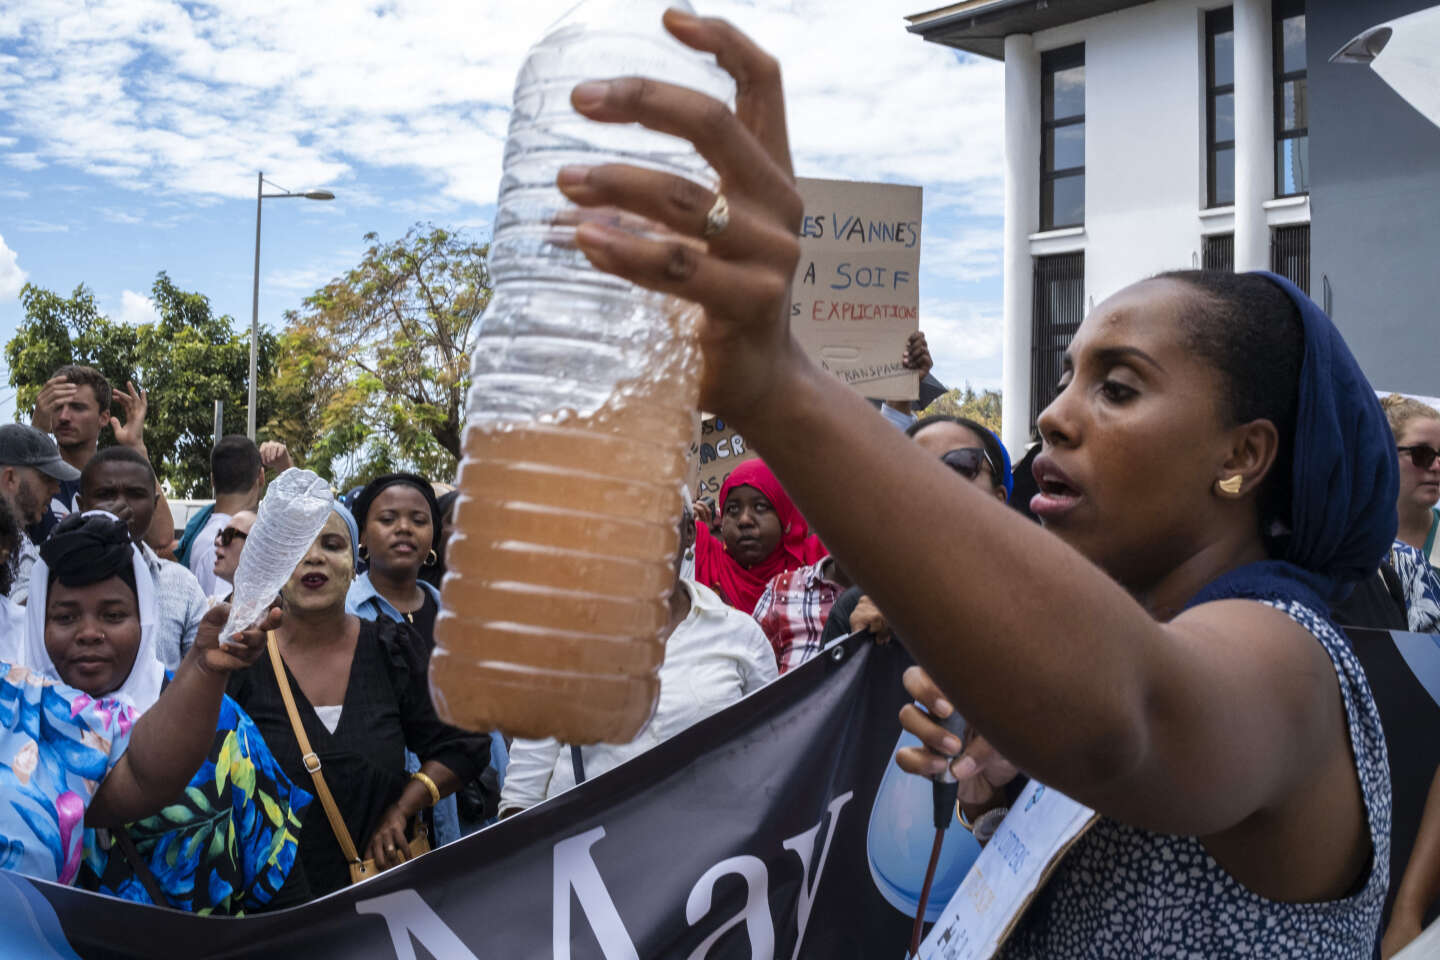 Avec la pénurie d’eau, Mayotte s’enfonce dans une crise « hors-norme » : « Ce n’est plus vivable. Les nerfs vont lâcher »